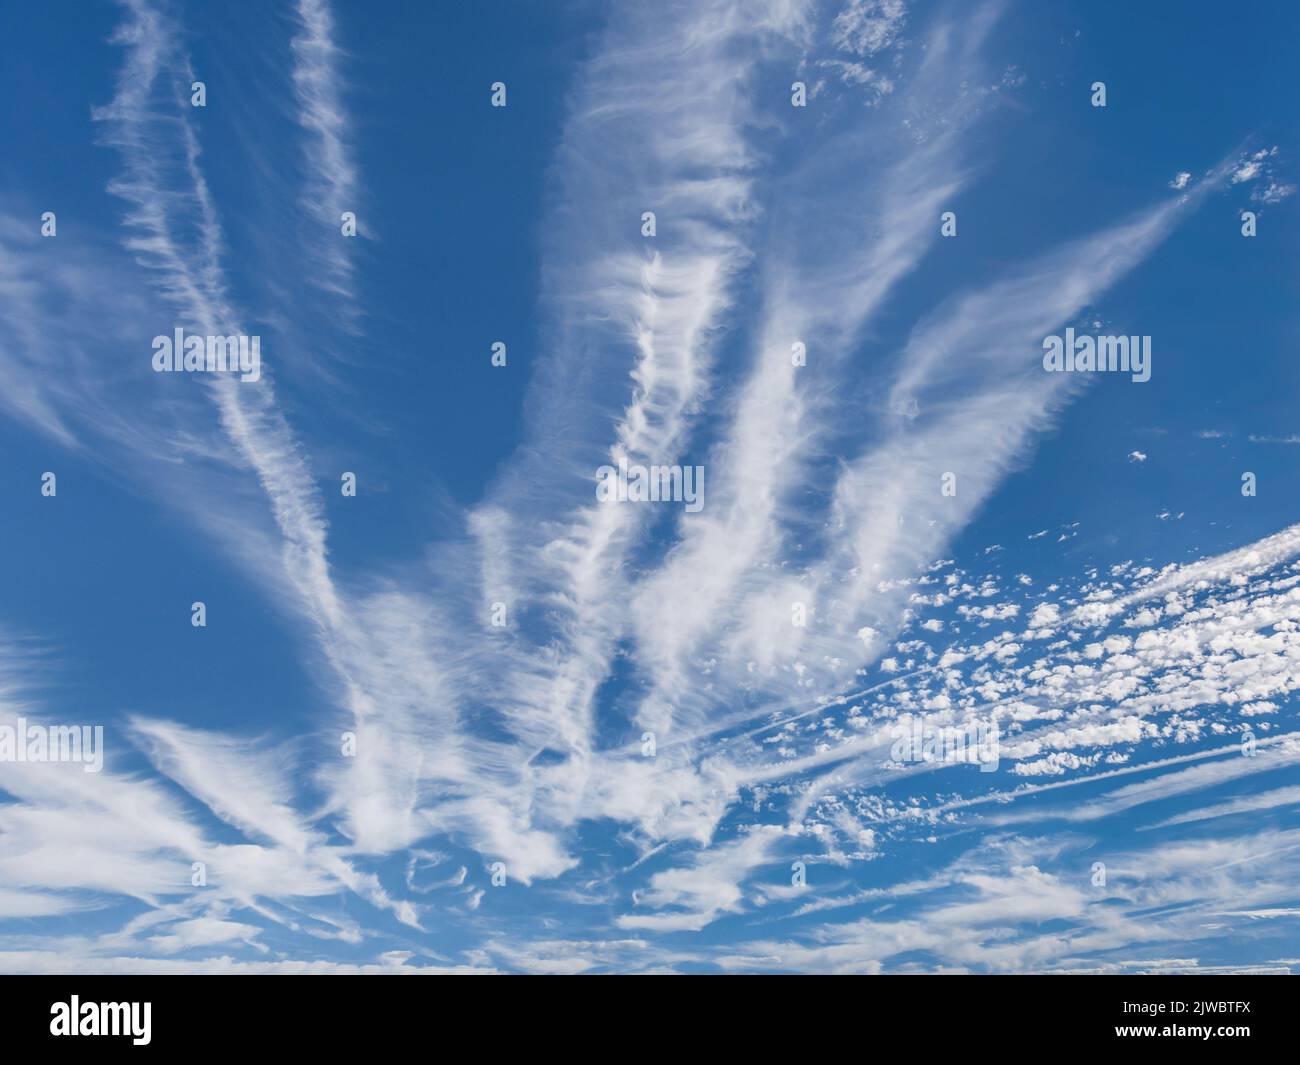 Aviones de reacción a la deriva de gran altitud se mezclan con nubes de altocúmulos (bajo contraste) - sud-Touraine, Indre-et-Loire (37), Francia. Foto de stock